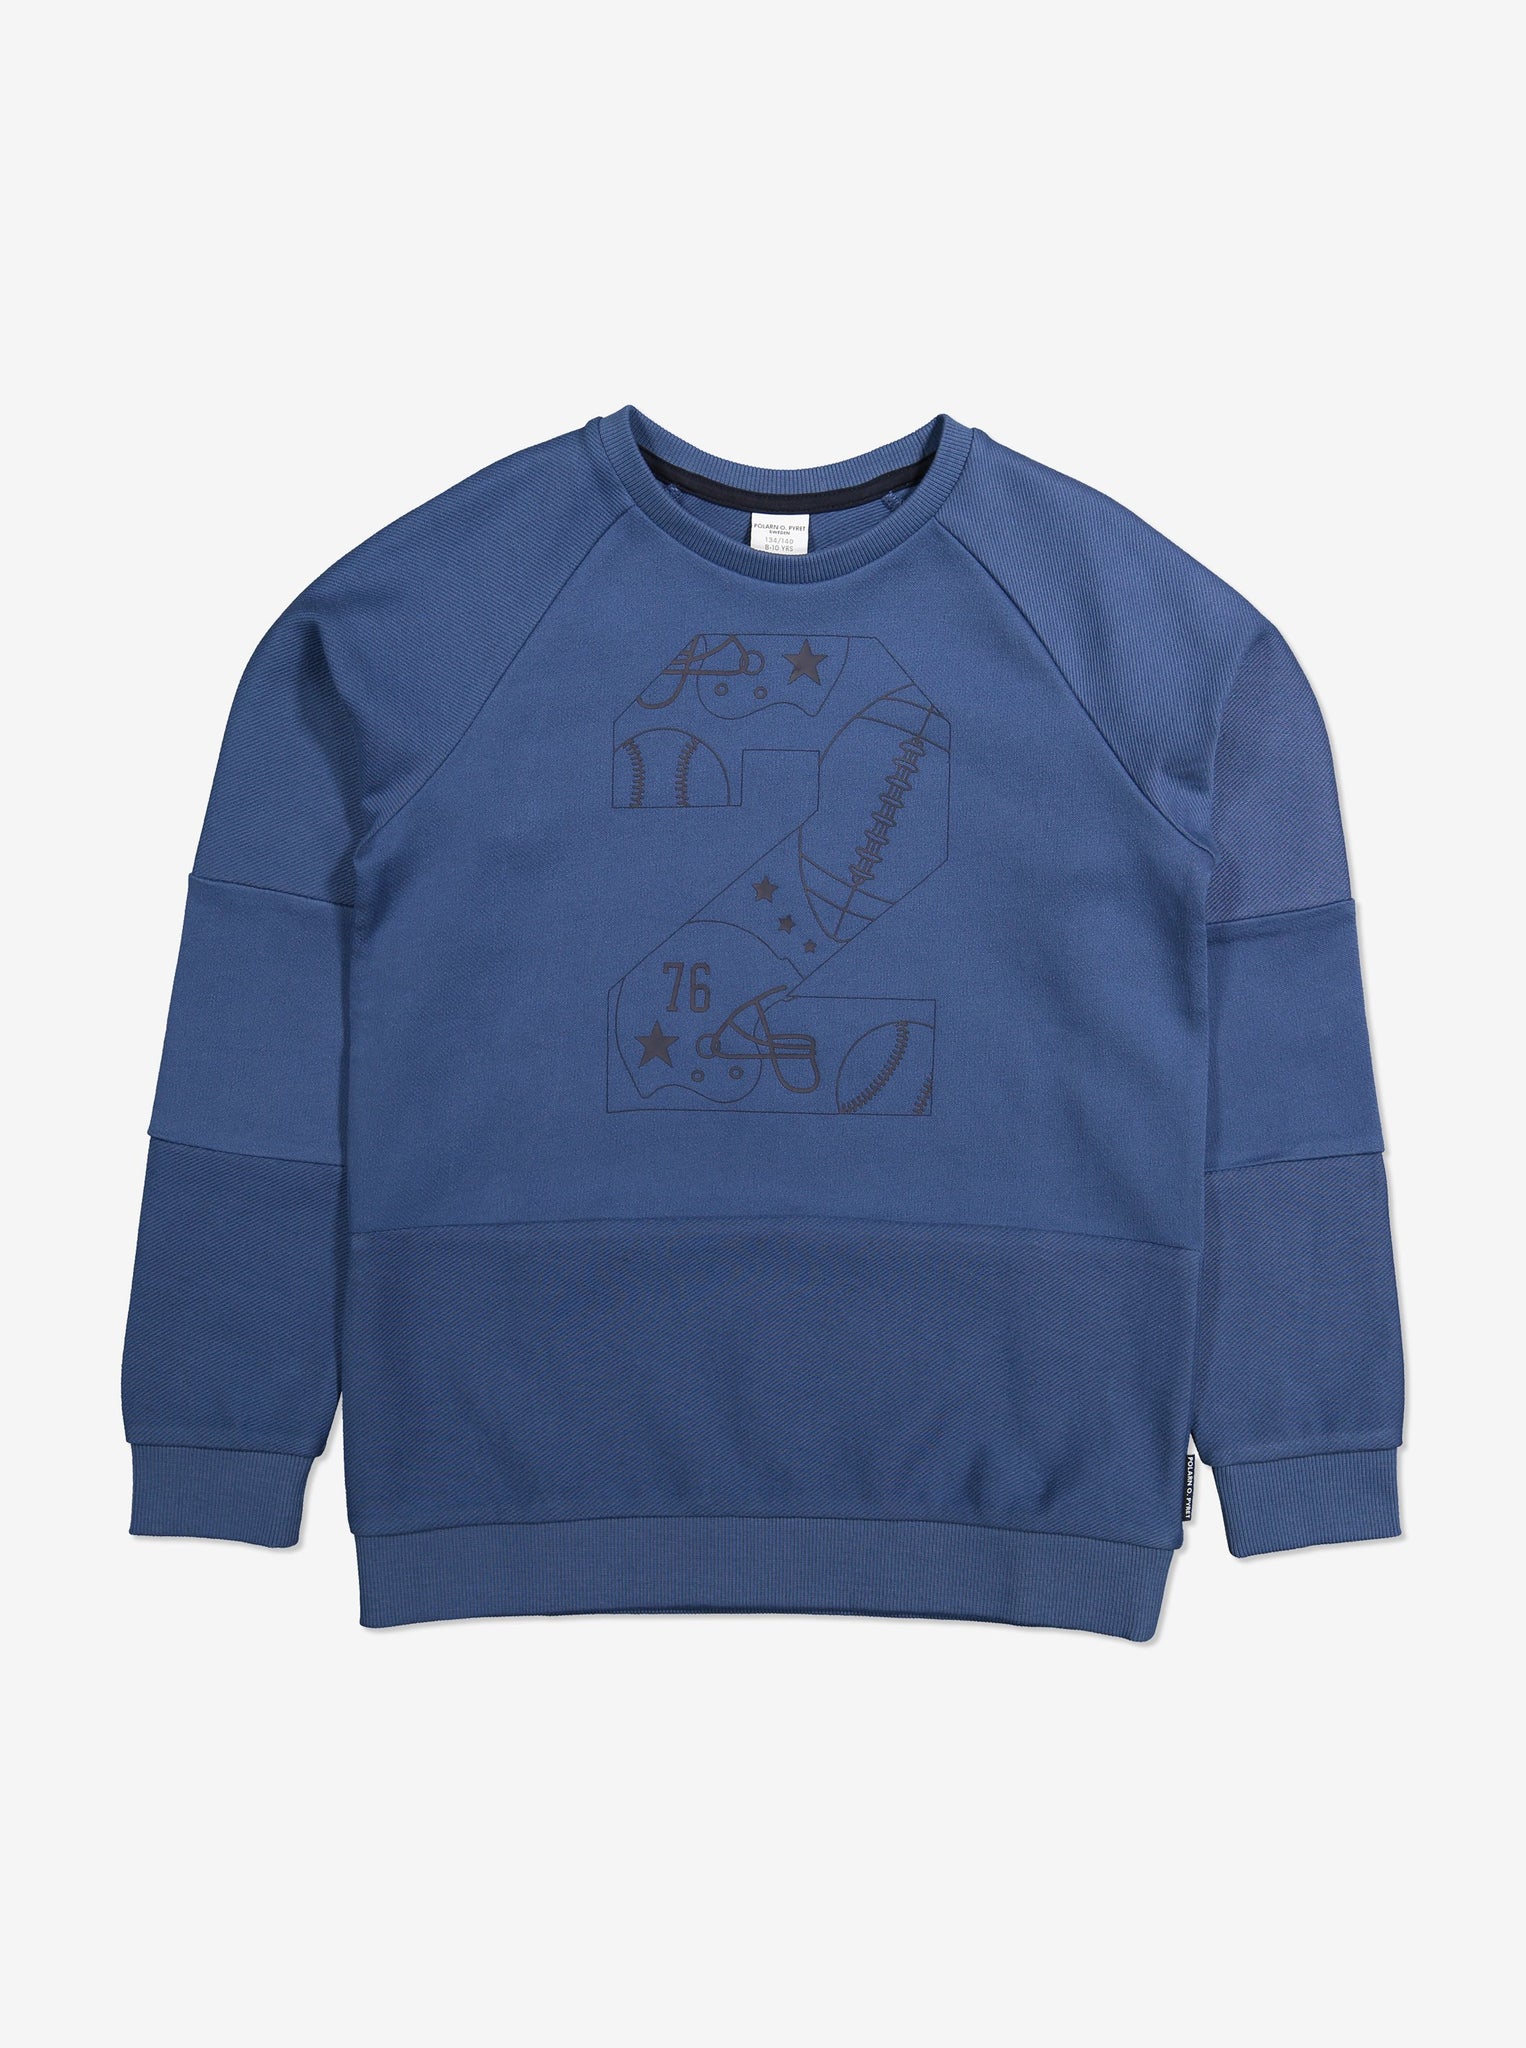 Herringbone Kids Sweatshirt-Unisex-6-12y-Blue